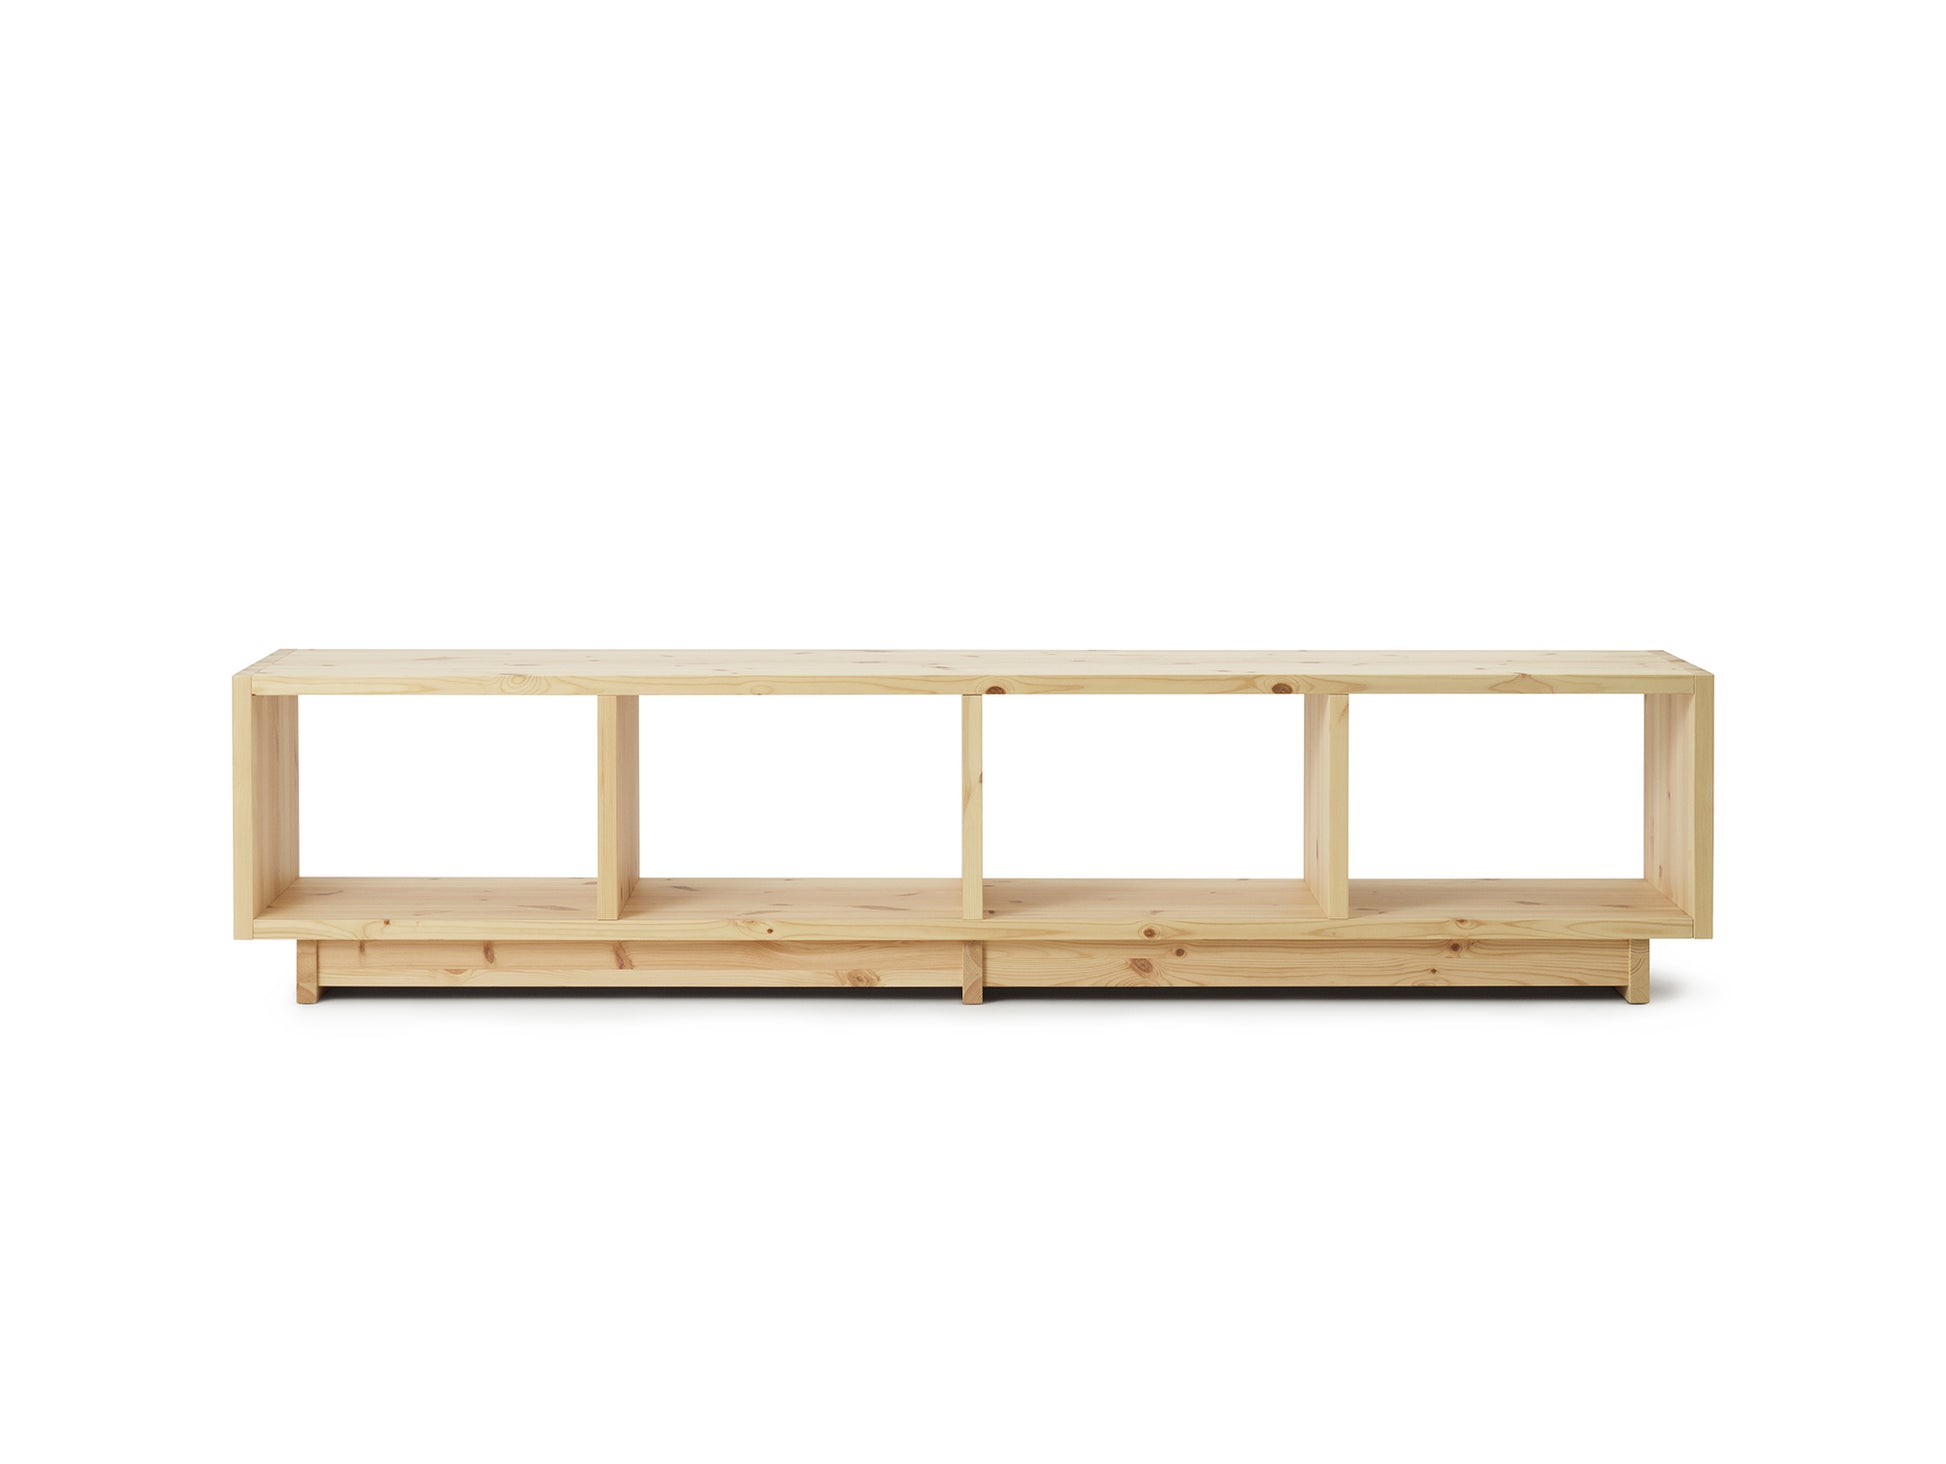 Plank Bookcase by Normann Copenhagen - Low